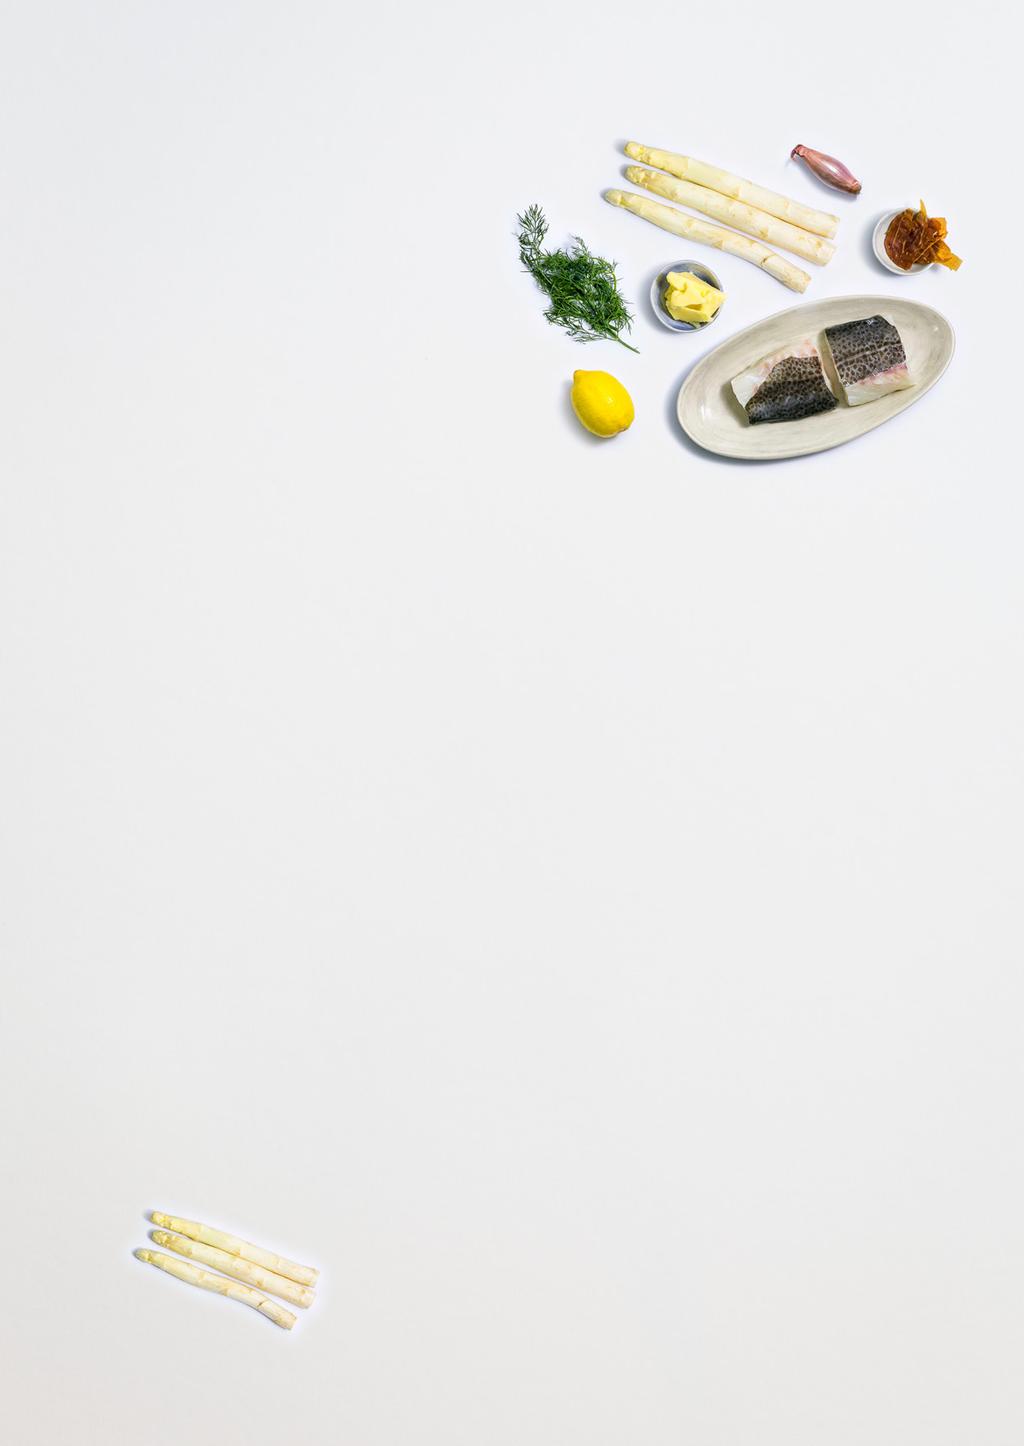 Pannestekt torskeloin Sitronglasert hvit asparges og sprø Suldalskinke Tore: Hvit asparges i sesong er en av vårens store høydepunkter!